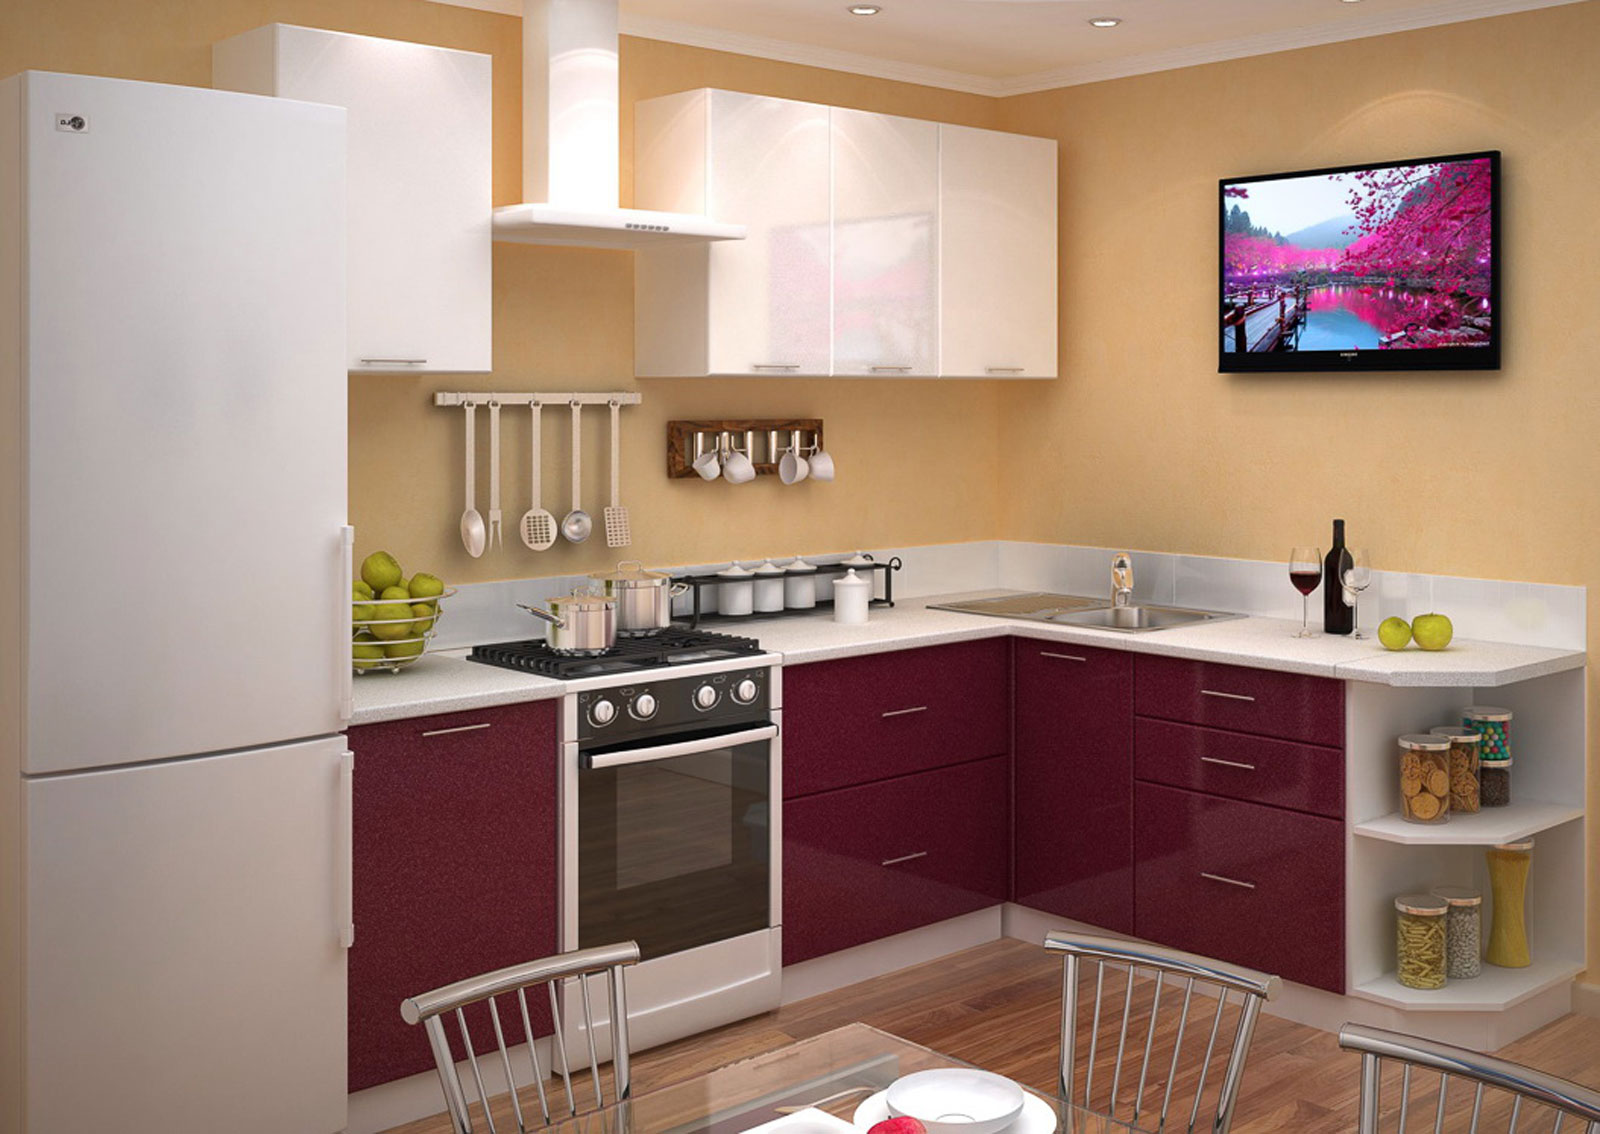 Покупка мебели в квартиру: основные критерии выбора кухонных гарнитуров и шкафов